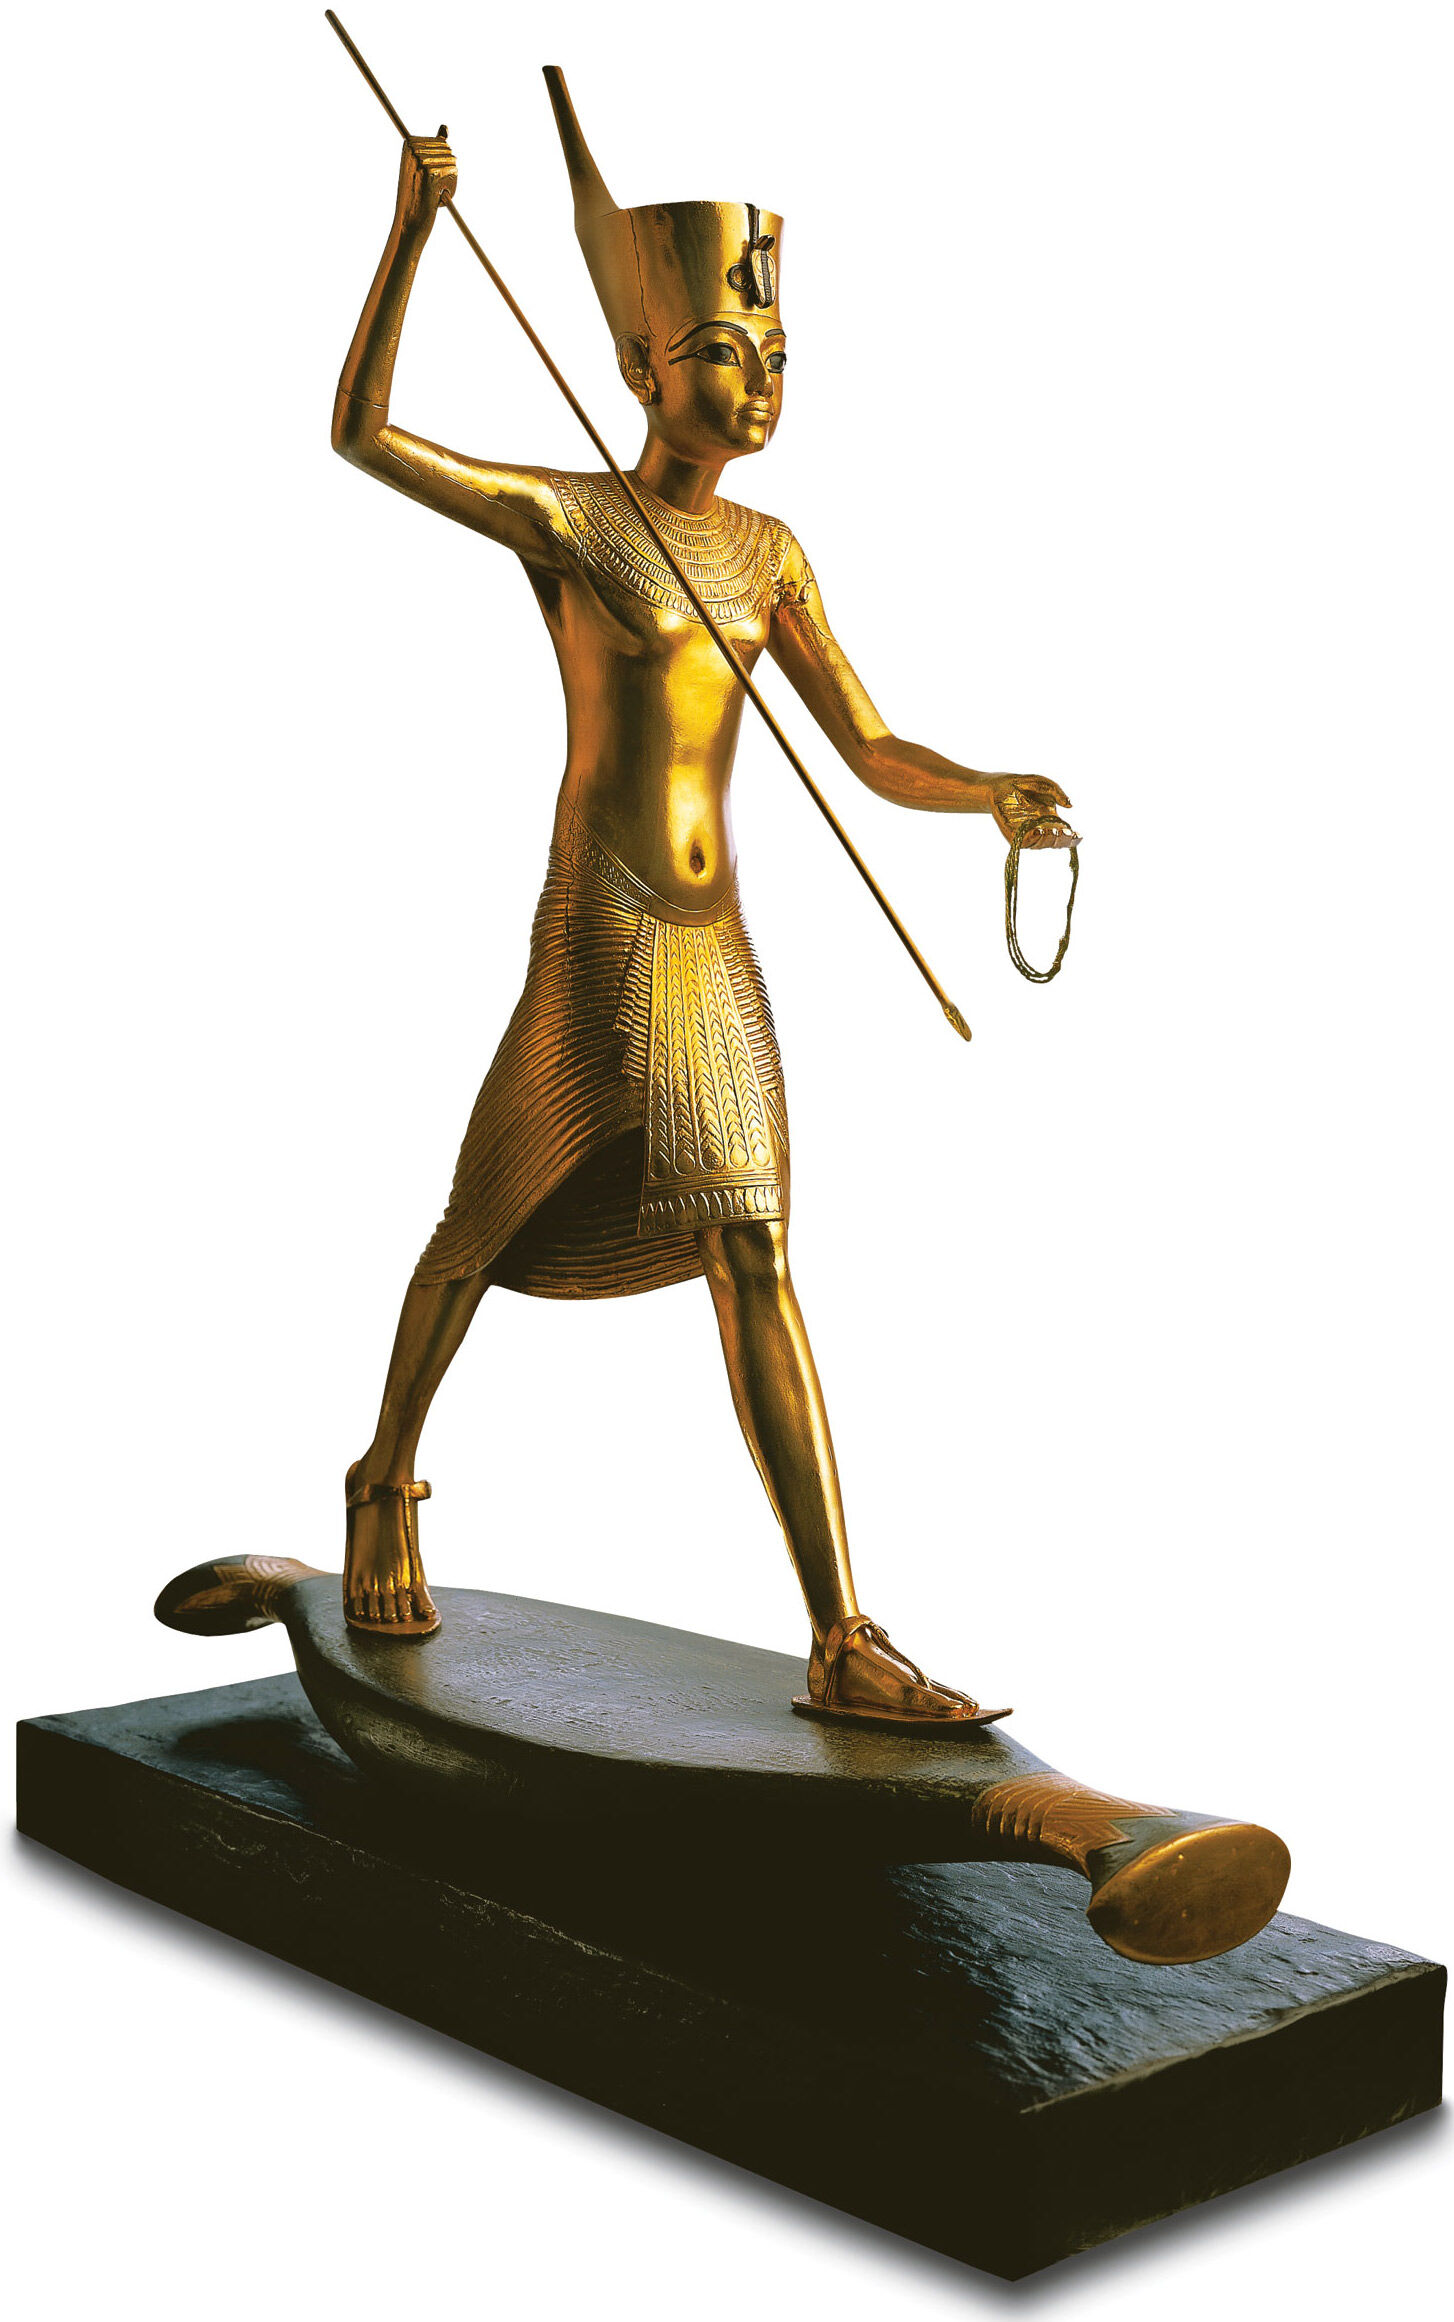 Sculpture "Tutankhamun with Harpooner", hand-gilded